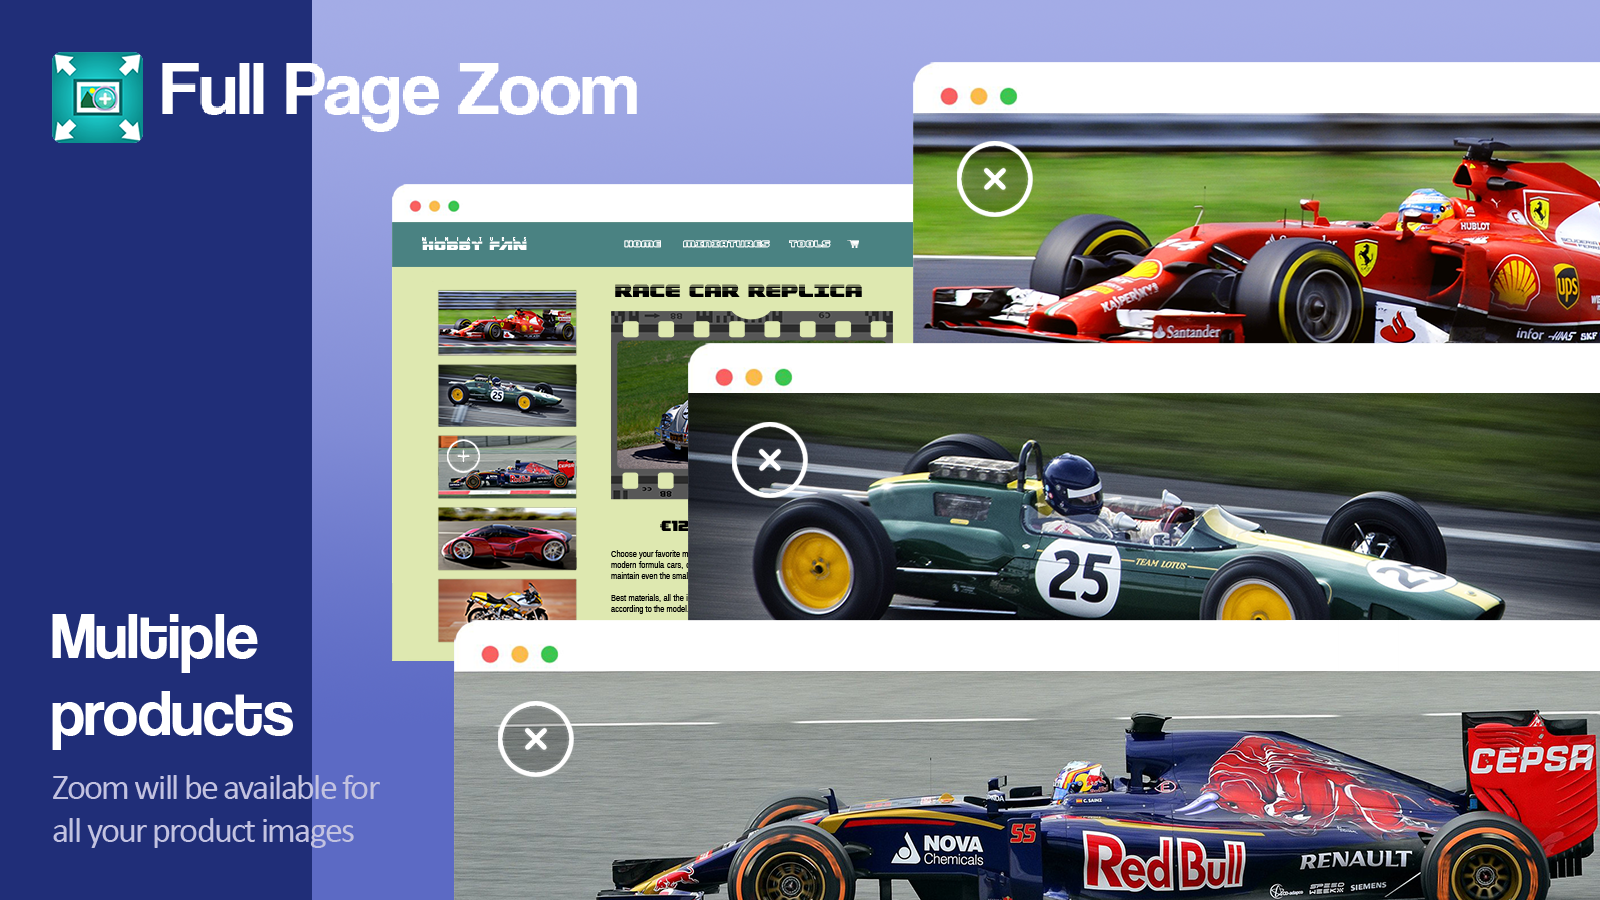 Le zoom sera disponible pour toutes vos images de produits